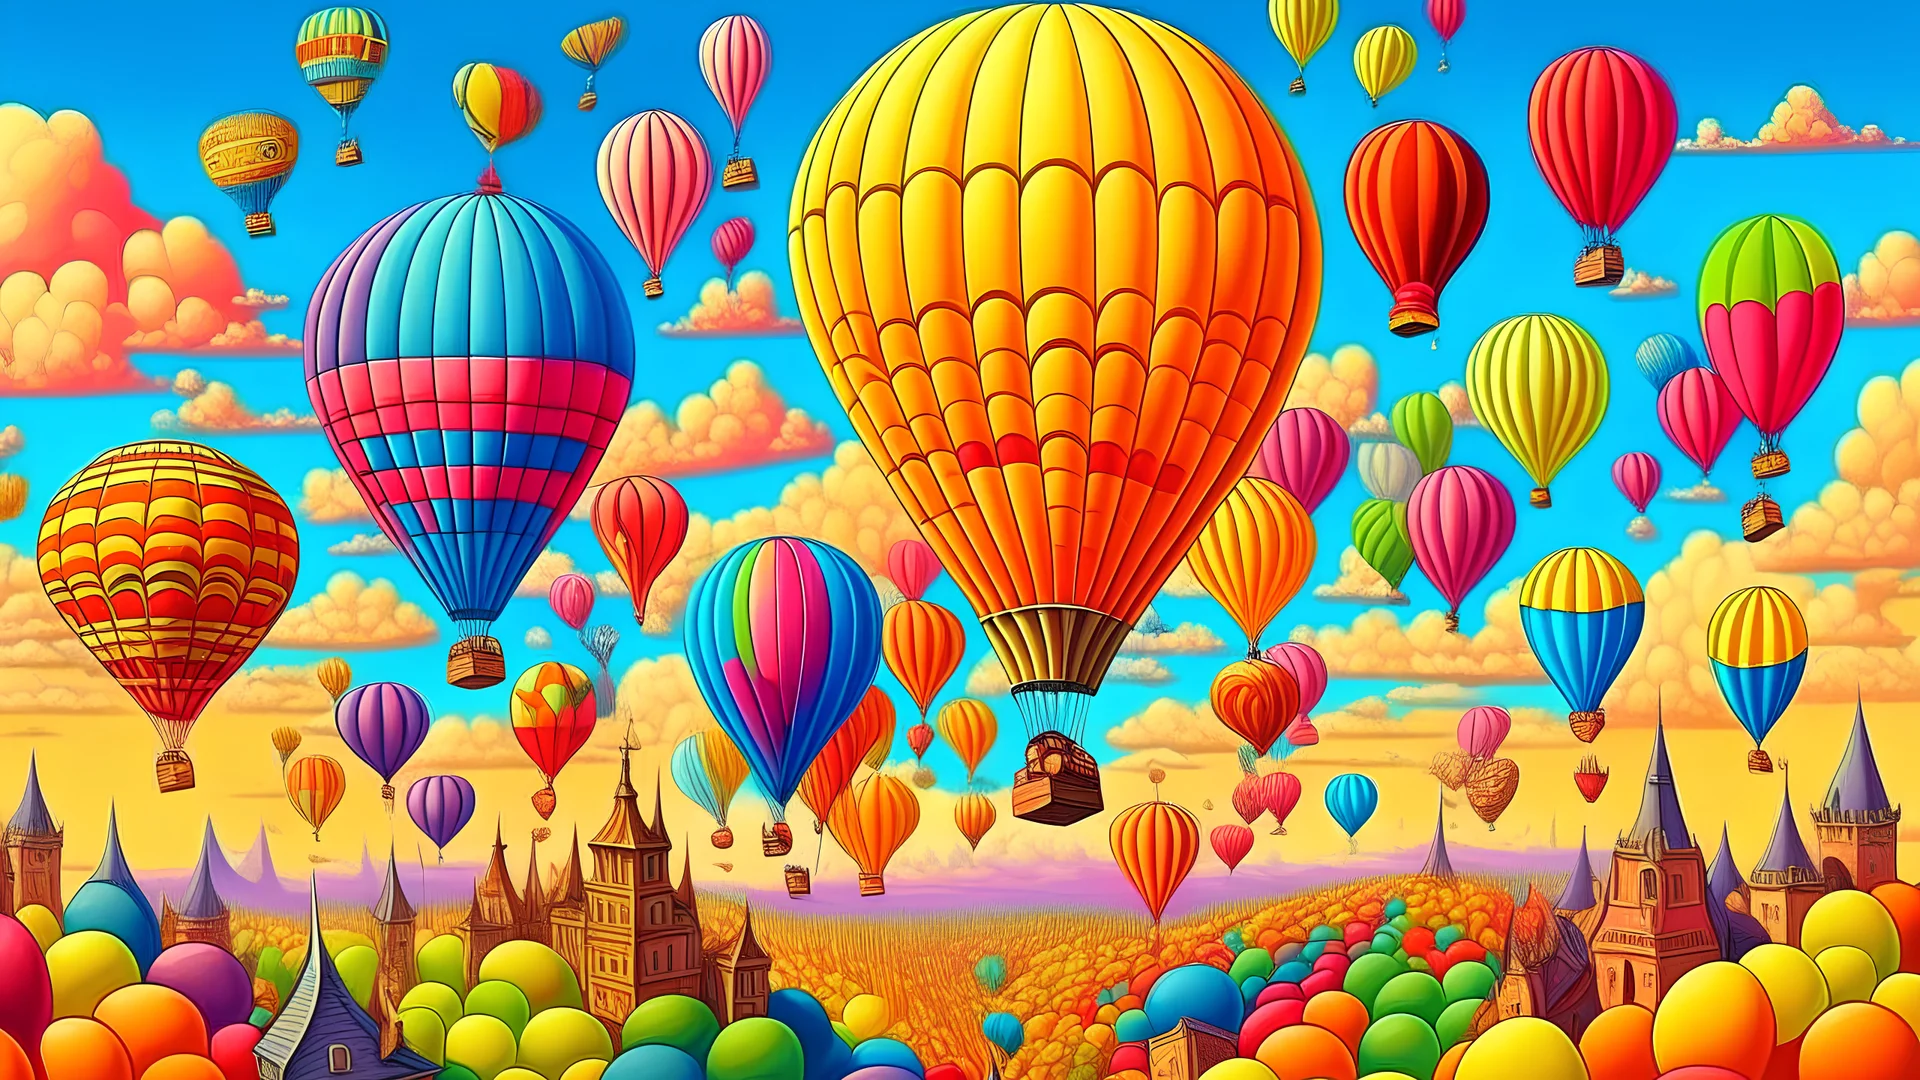 你是一個想像力豐富的兒童插畫家 要畫瘋狂世界裡，天空中，一群氣球飛行員正駕駛著巨大的麵條氣球，它們的形狀就像各種不同的麵條，讓天空也充滿了歡樂。 圖要有邊黑框